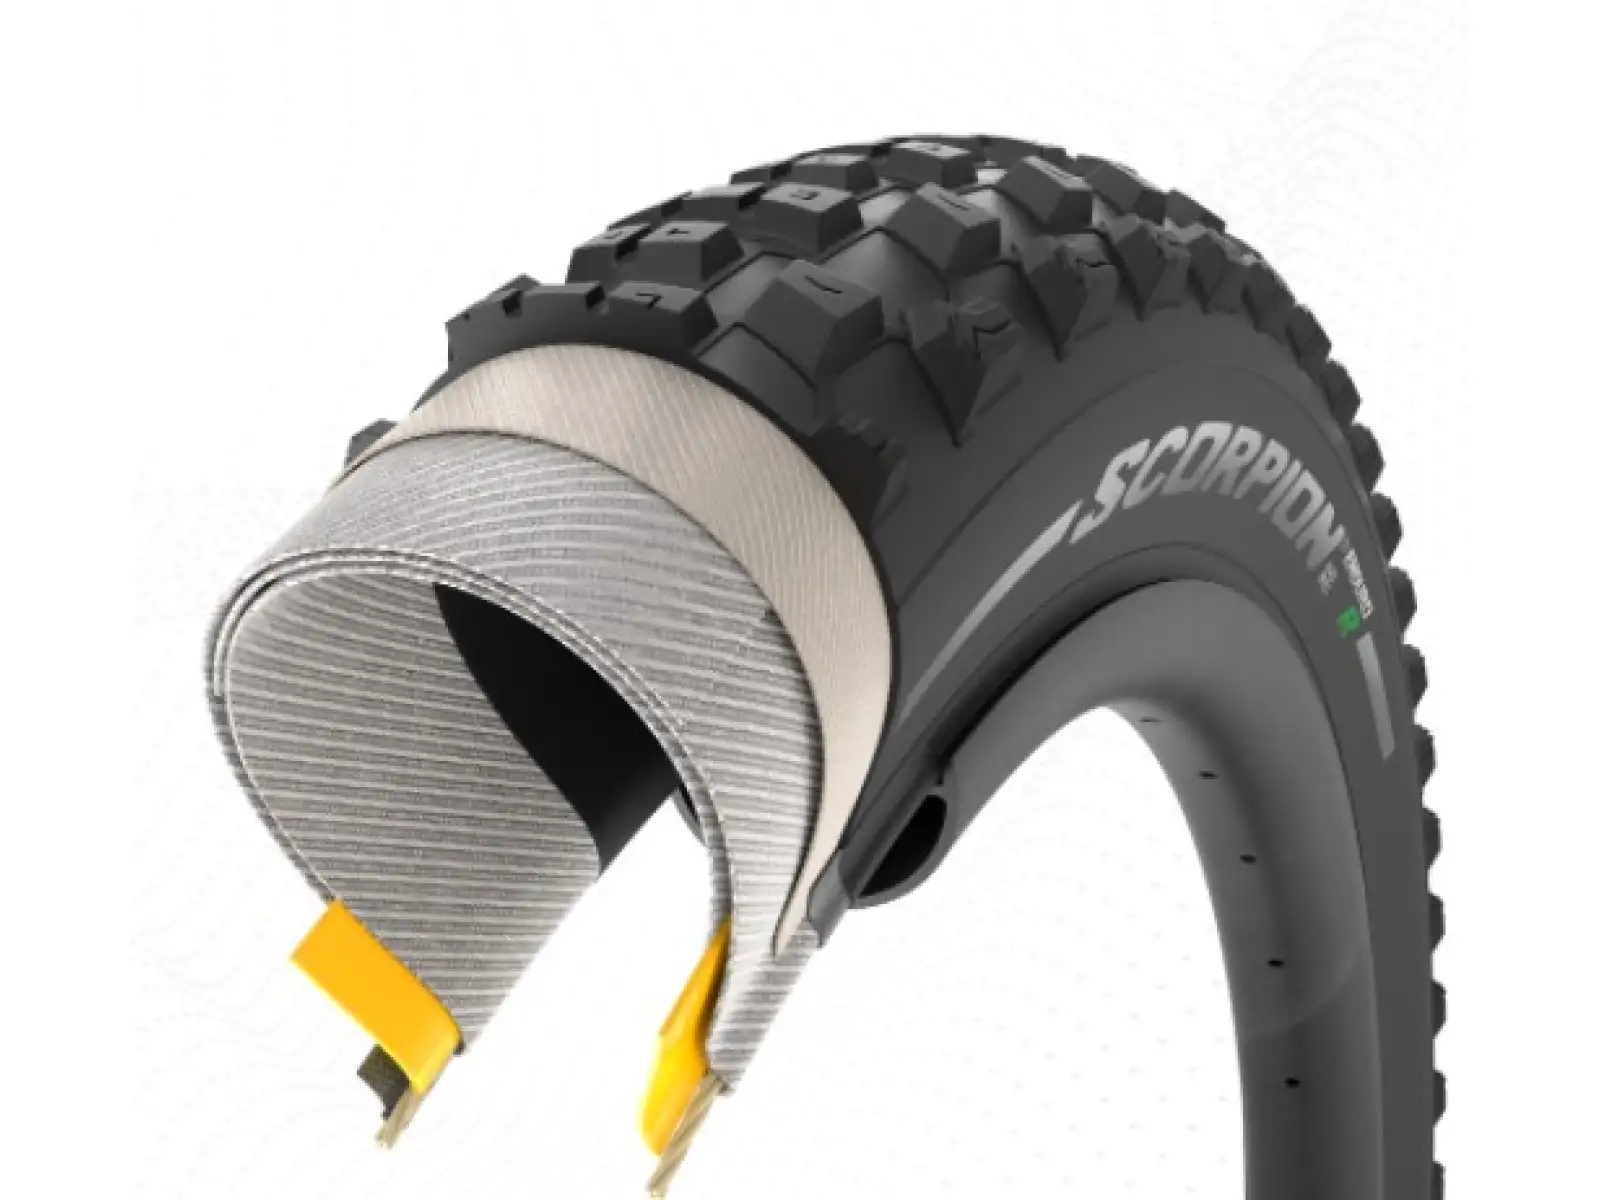 Pirelli Scorpion Enduro R HardWALL 29 x 2.4 plášť kevlar, určen pro zadní kolo